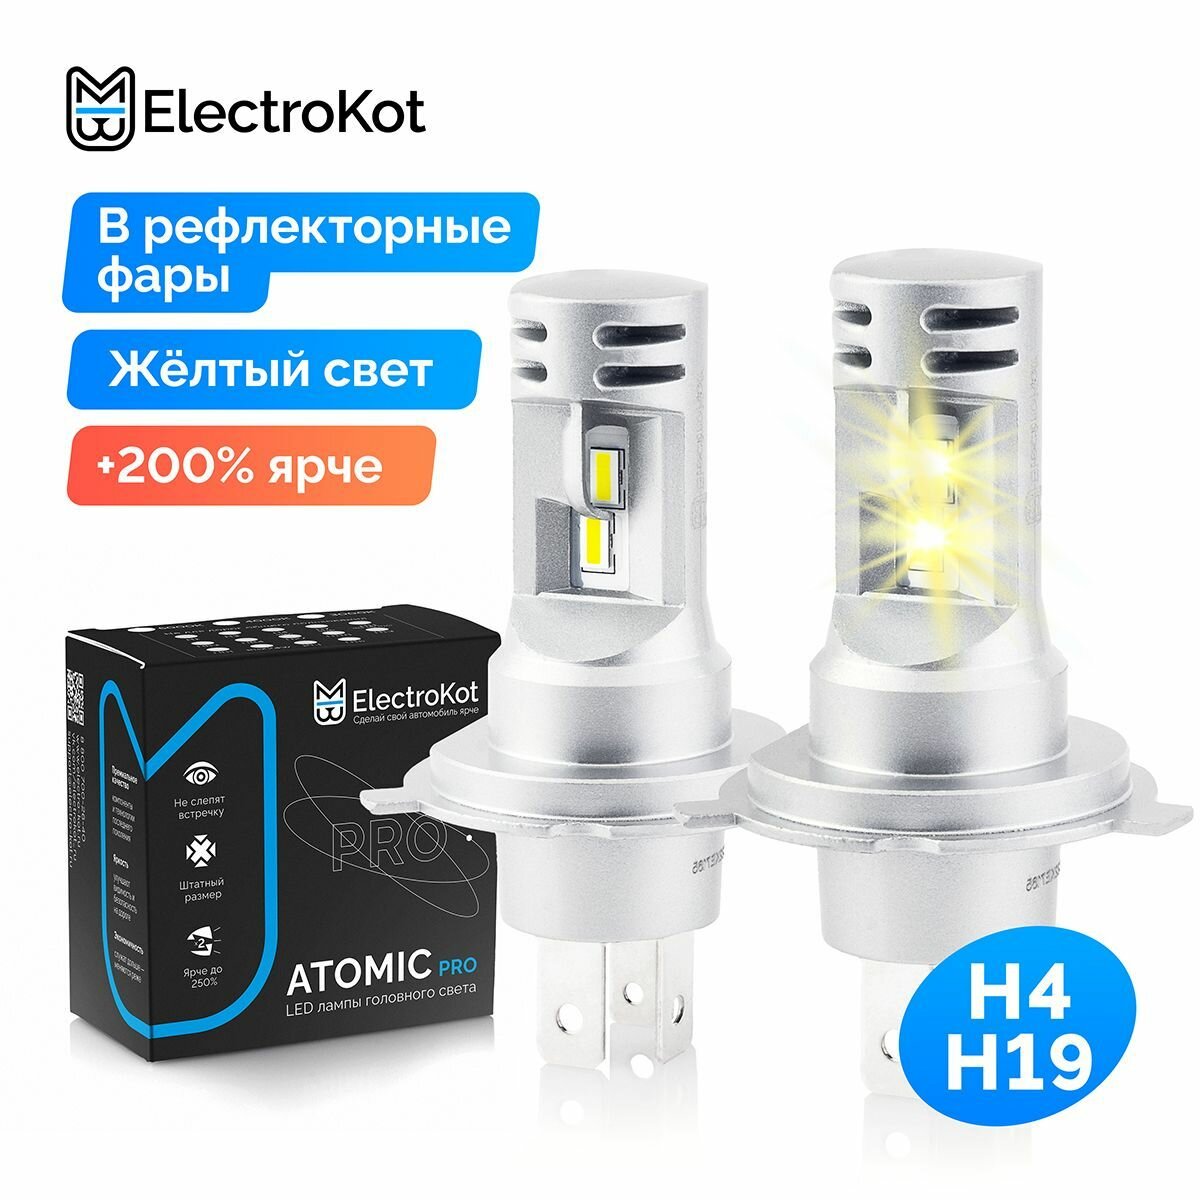 Светодиодные лед лампы для авто ElectroKot Atomic PRO H4 H19 3000K желтый свет 2 шт, в ближний, дальний